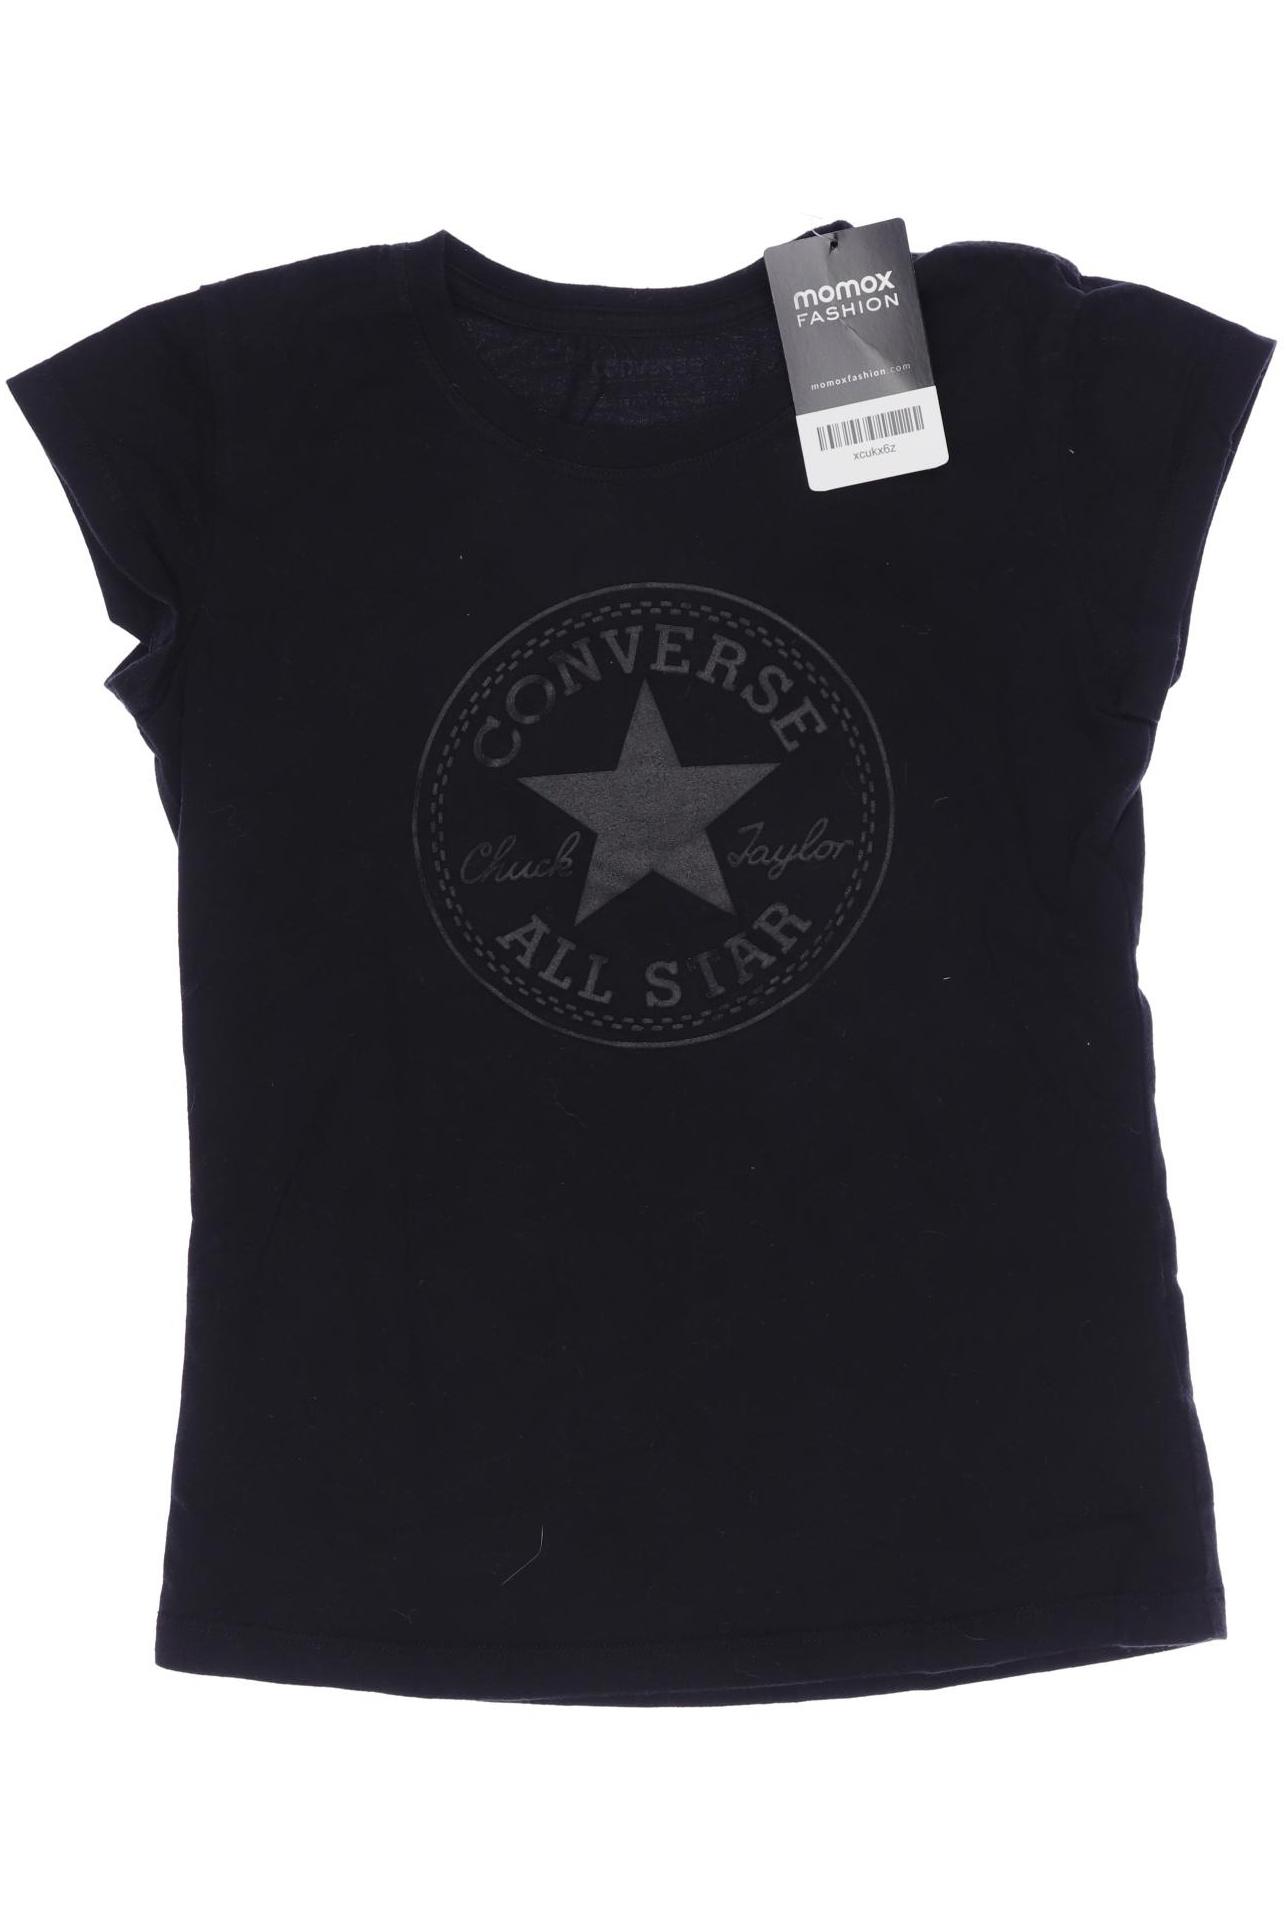 Converse Herren T-Shirt, schwarz, Gr. 146 von Converse